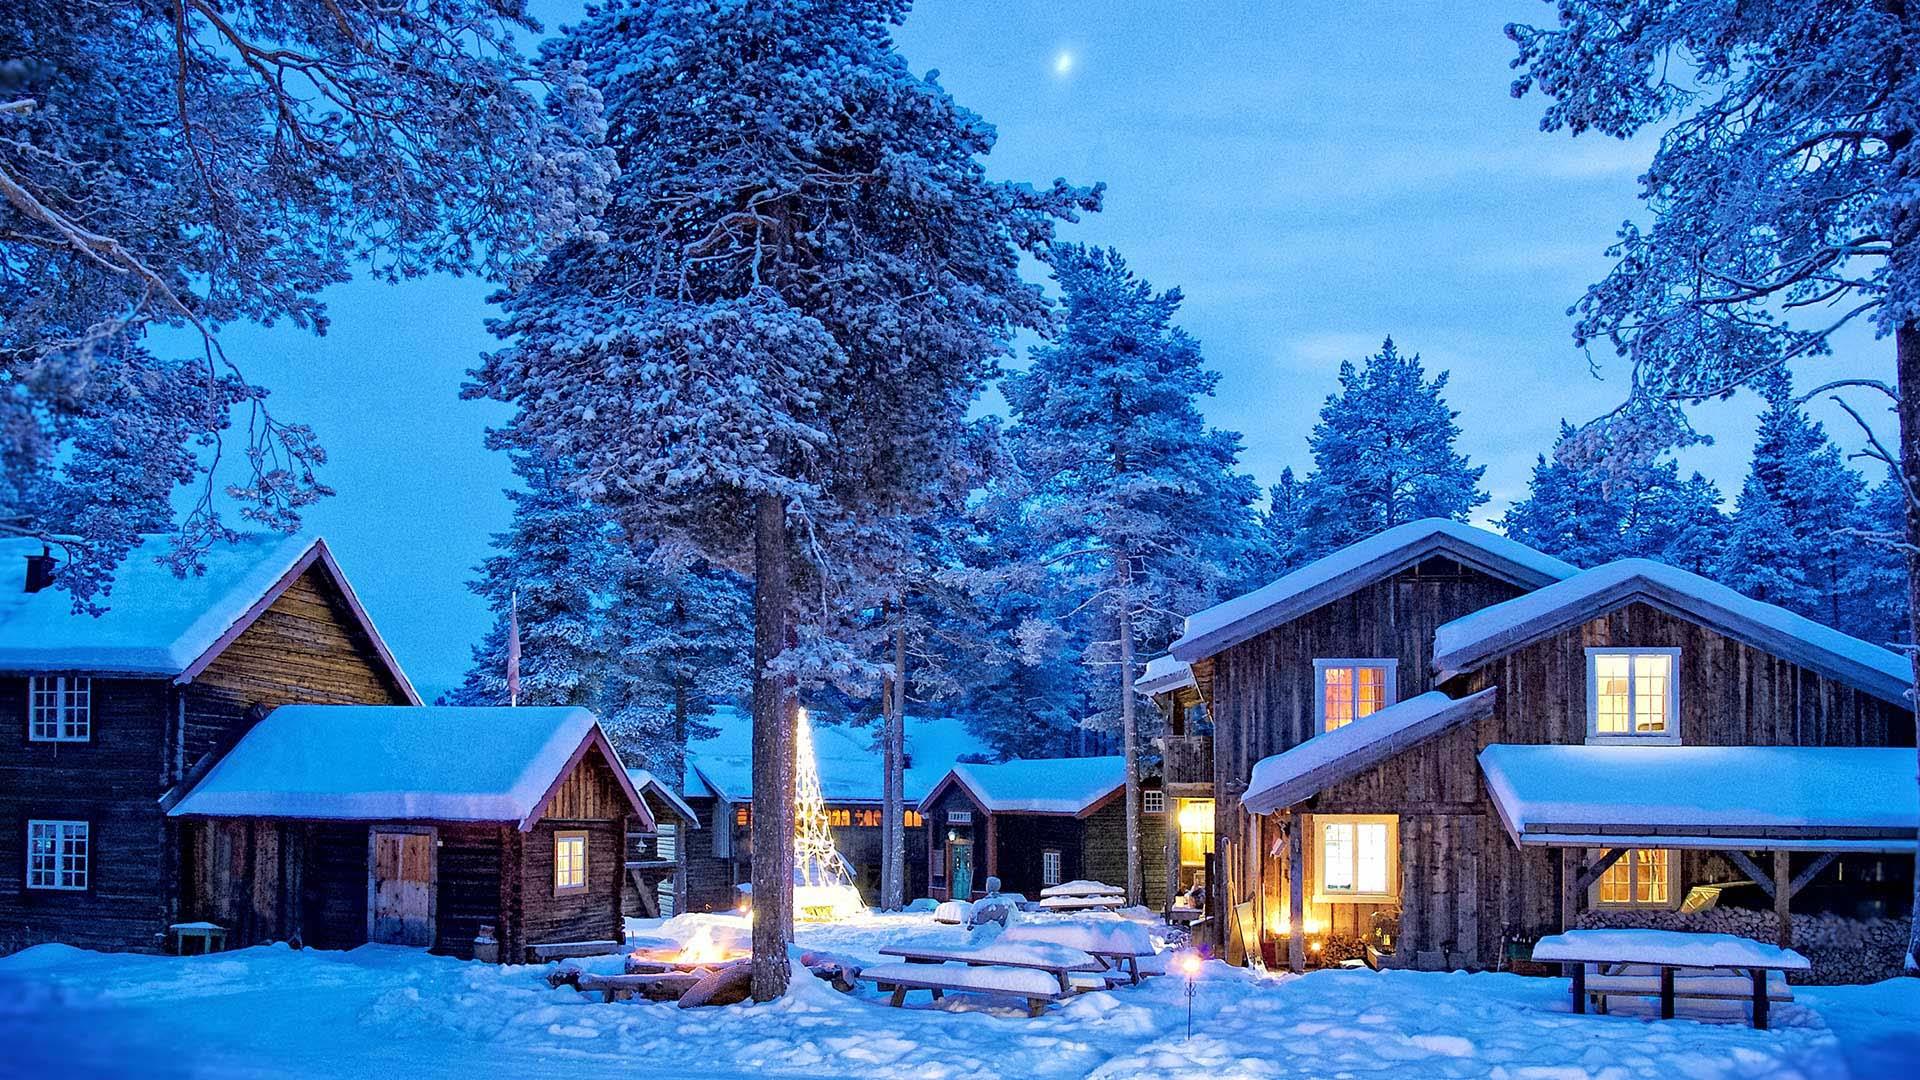 Ein Hotelkomplex von Blockhäusern in offenem Kiefernwald in einer Winternacht mit Schnee und Vollmond